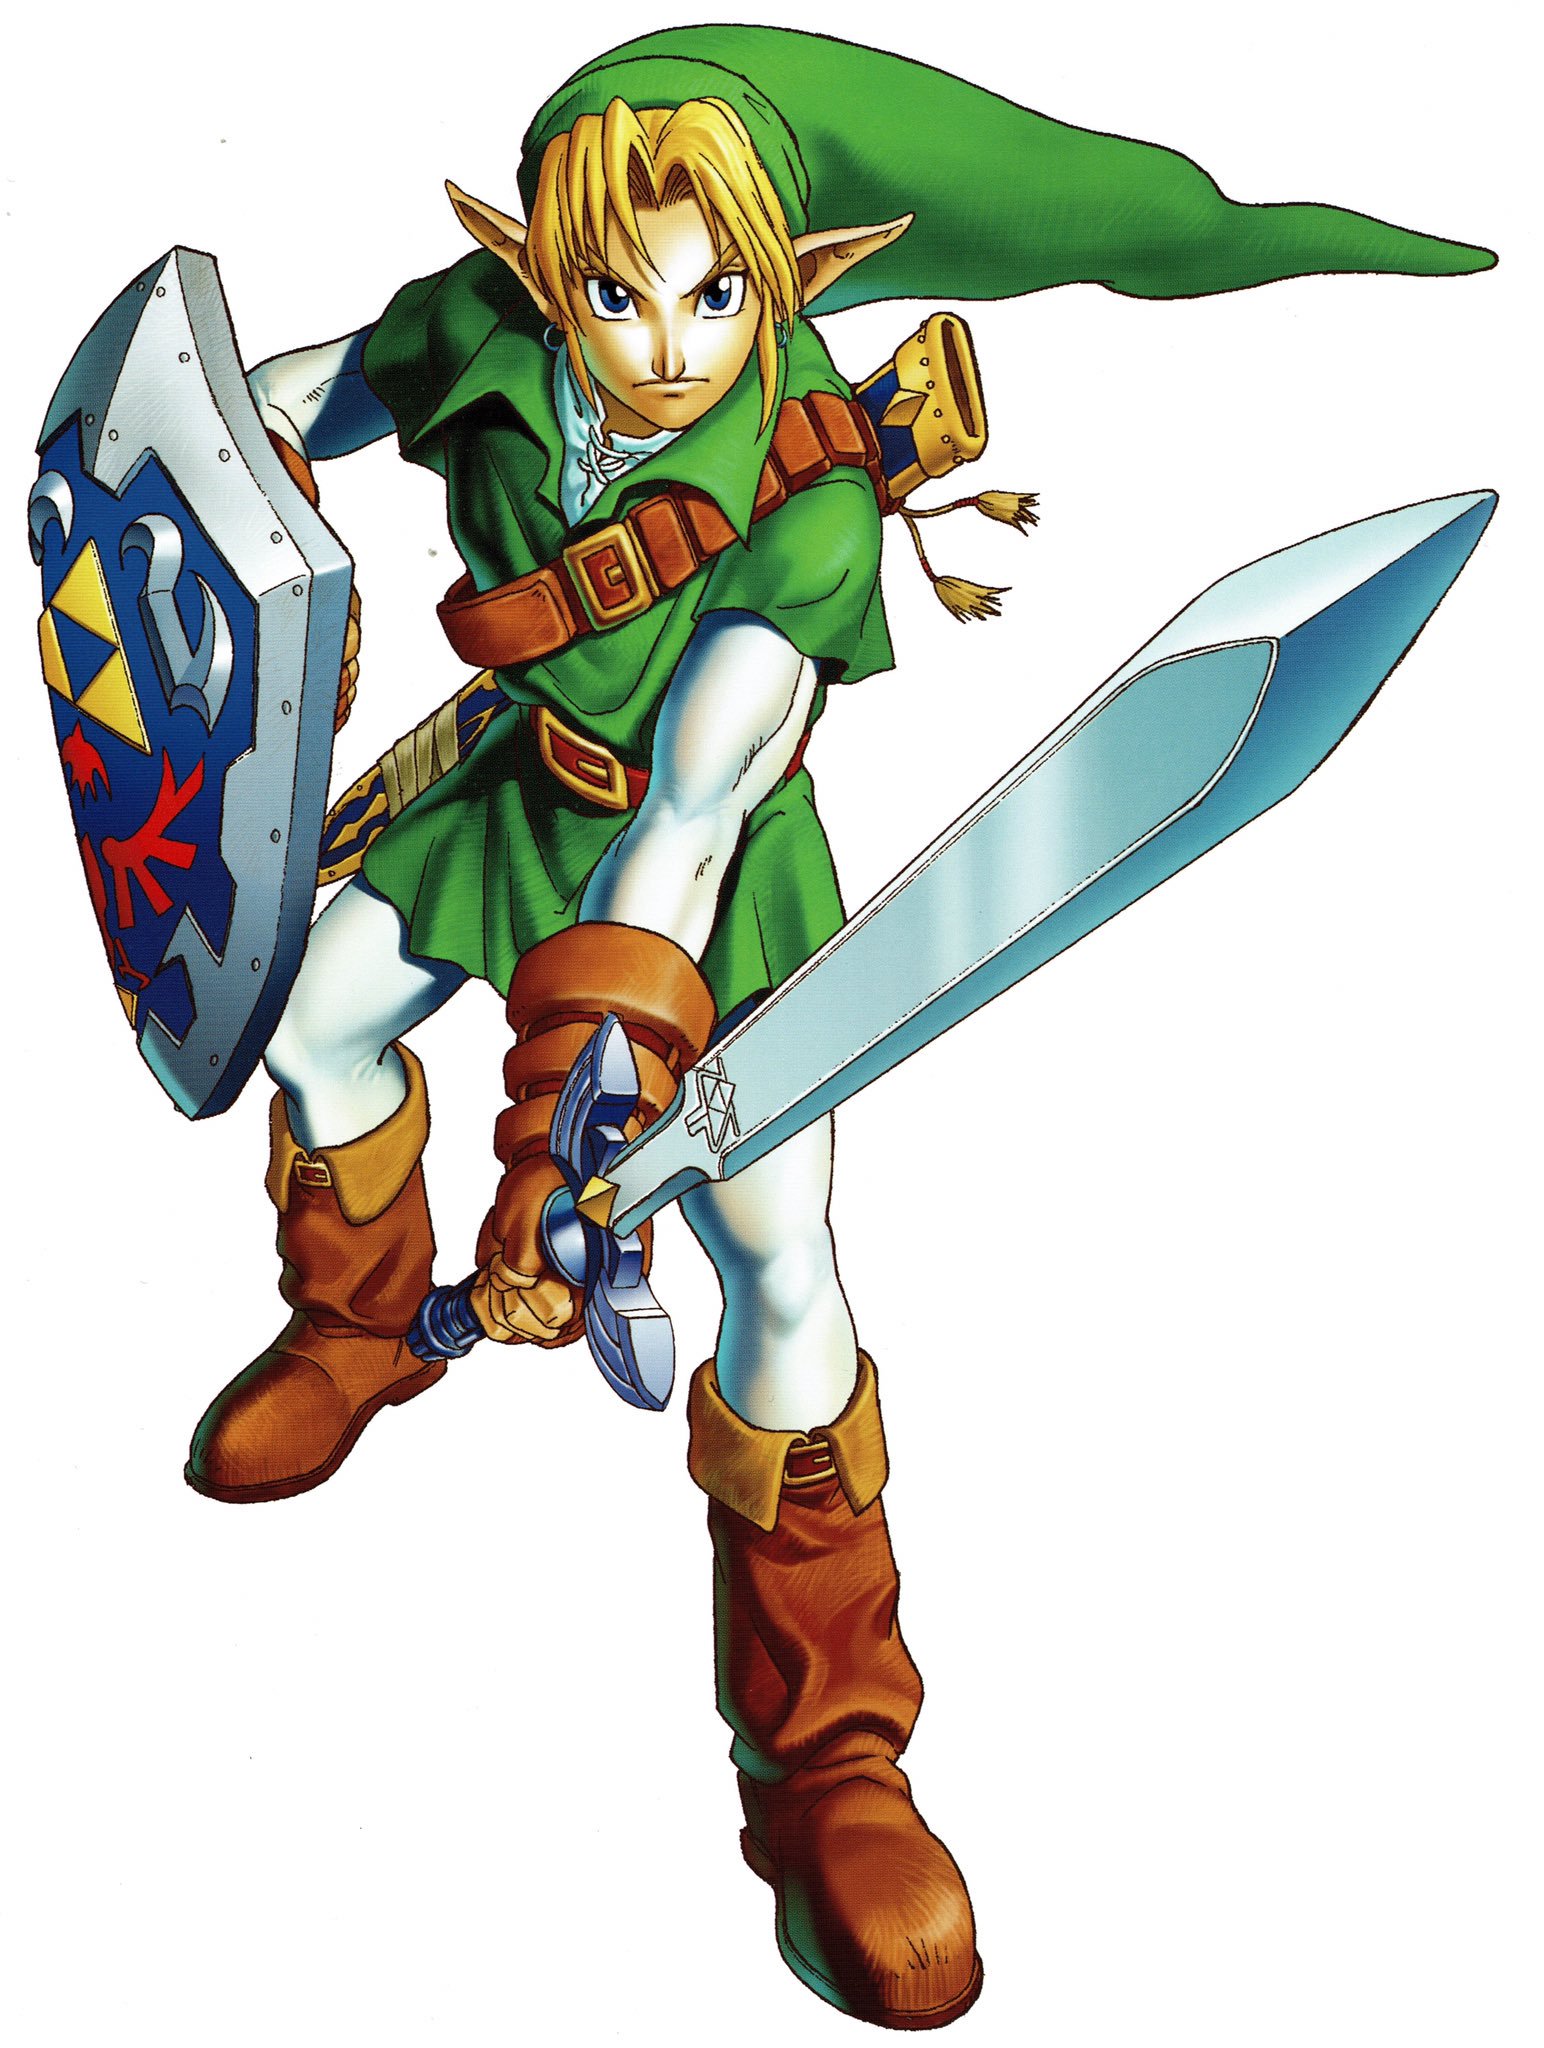 Adult Link - The Legend of Zelda: Ocarina of Time Guide - IGN